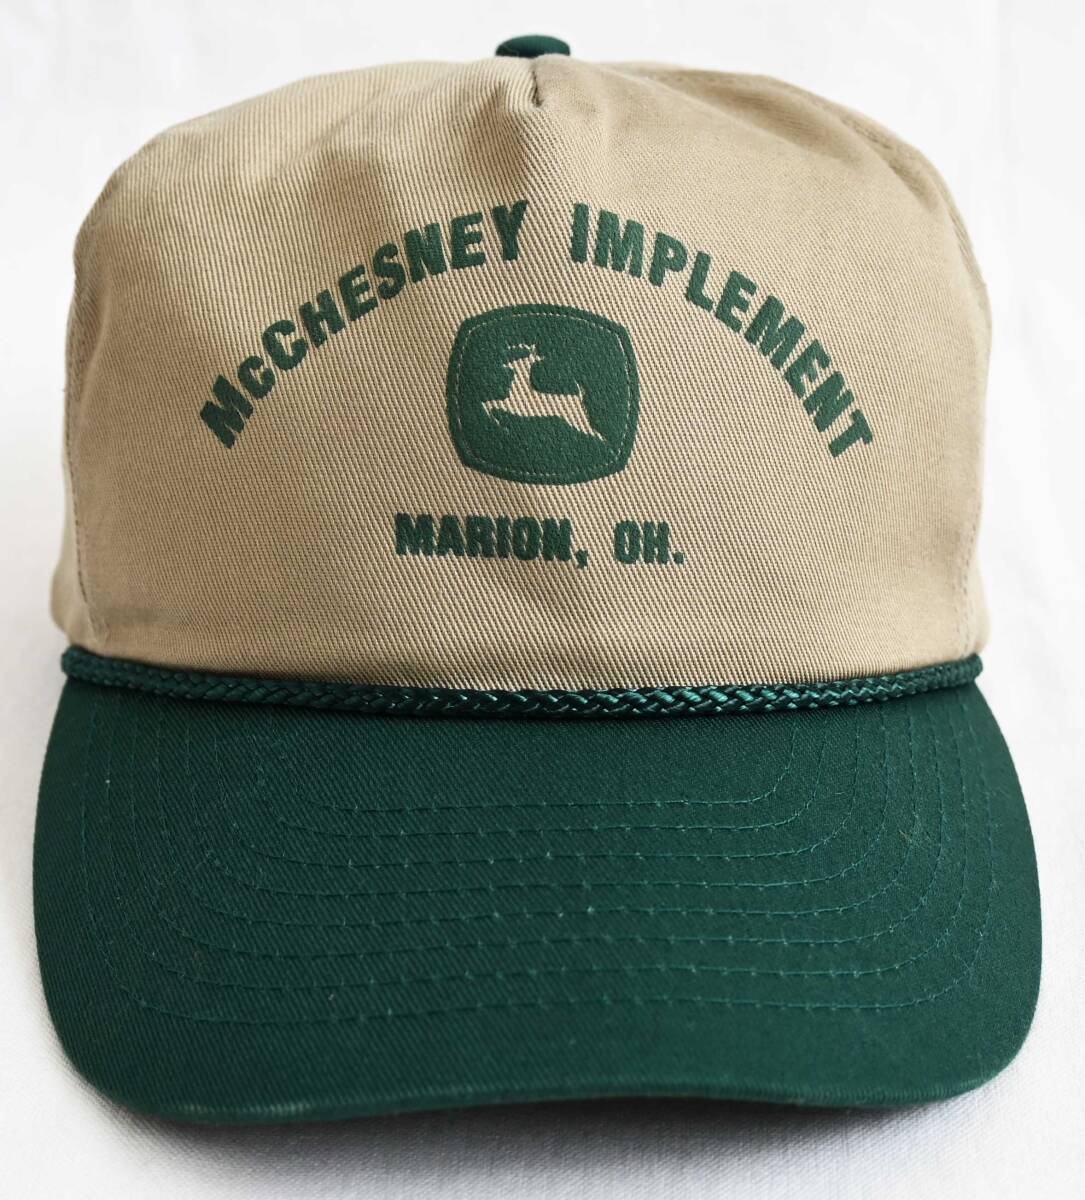 即決【80'sヴィンテージ/MOHR'S】McChesney Implement Marion, Oh 2トーン キャップ/カーキ×グリーン/企業ロゴ/アメリカ買付(om-242-10-6)_画像2